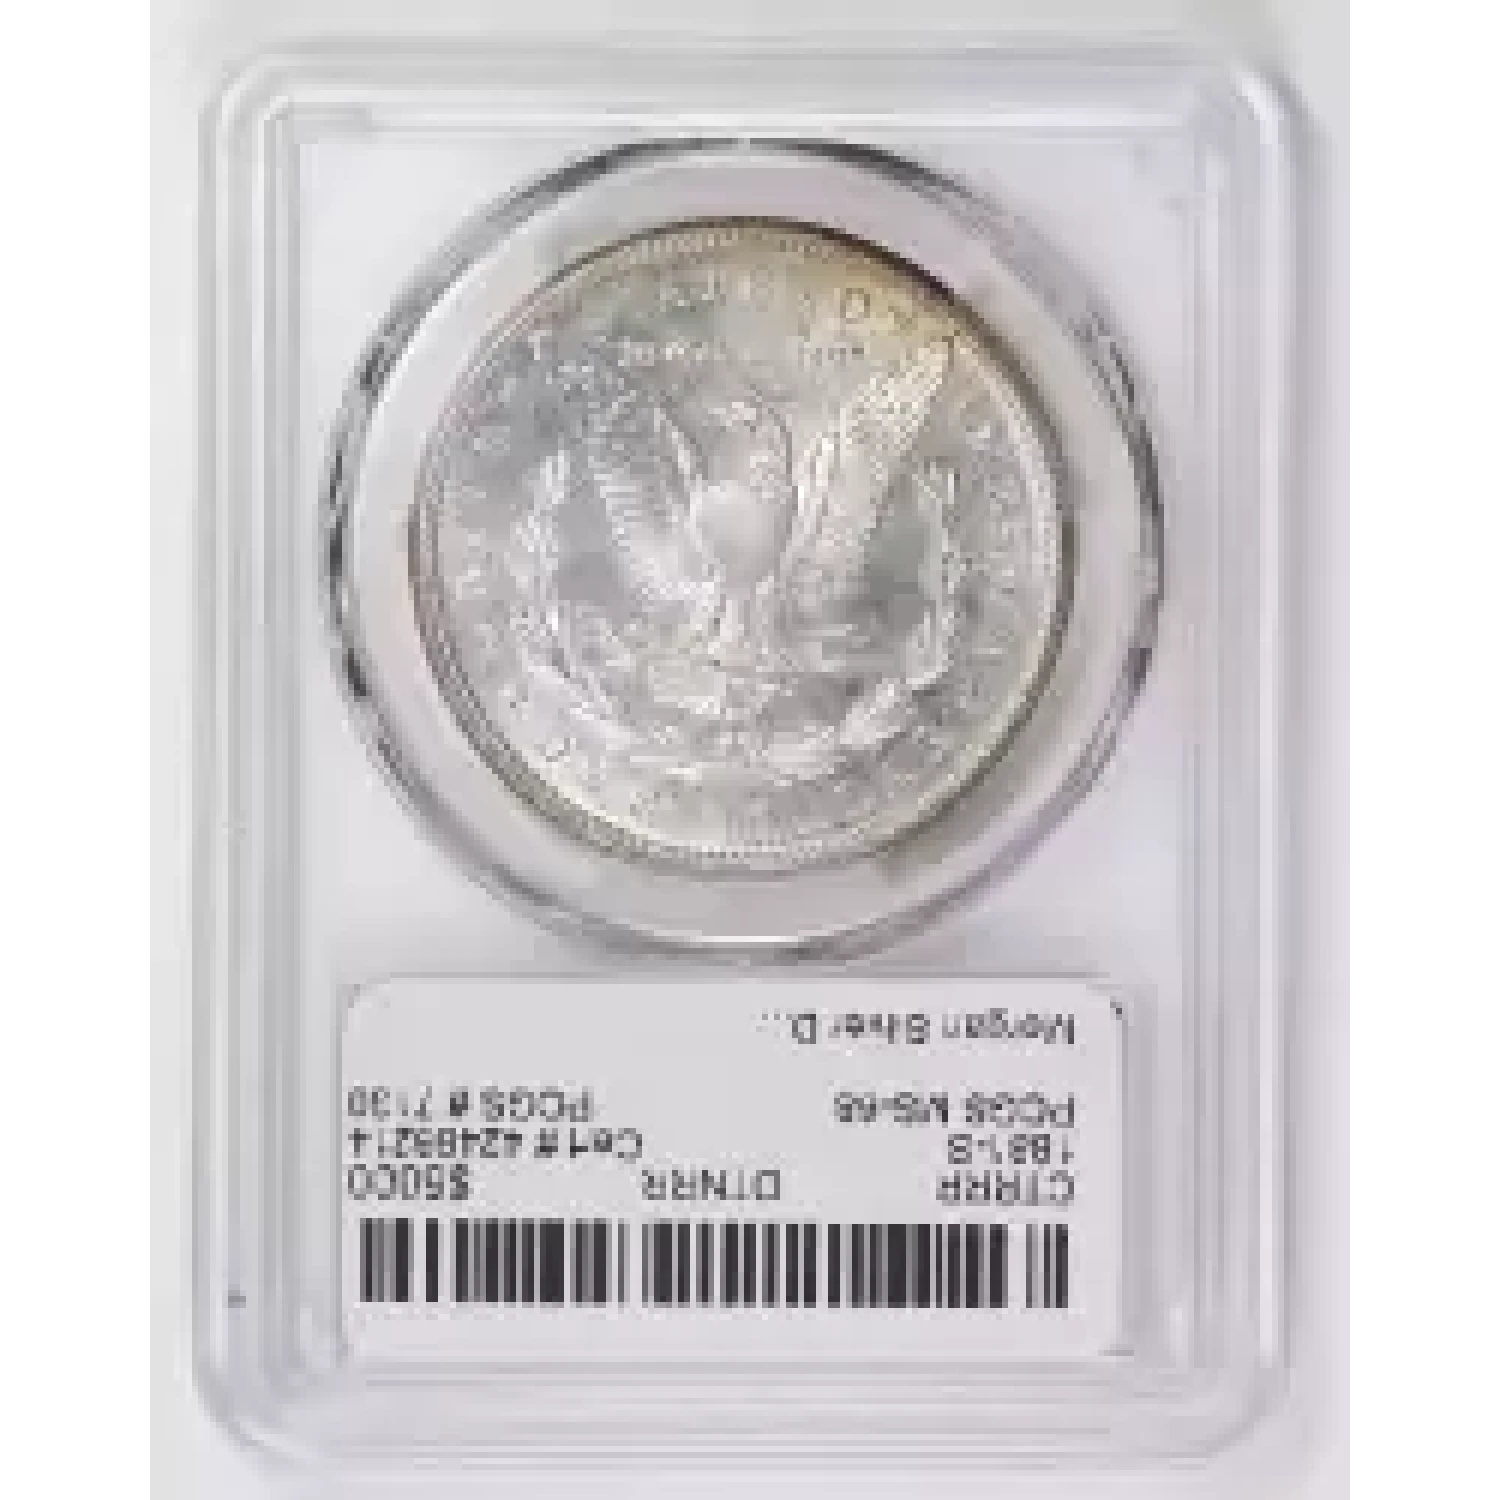 1881-S $1 (3)